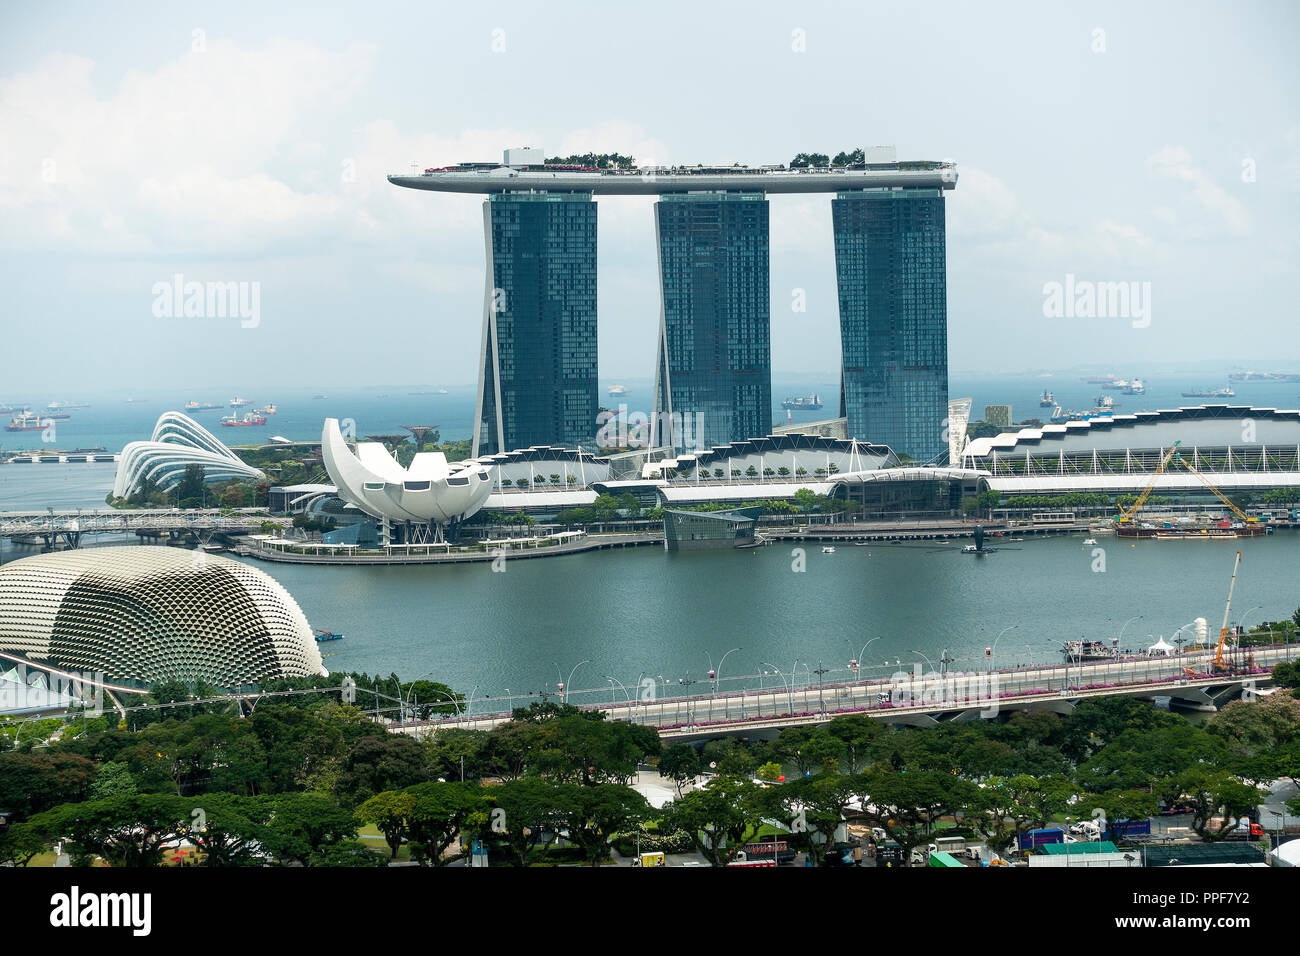 Vue aérienne du Peninsula Excelsior Haut de toit Esplanade Theatre, Marina Bay Sands Hotel, Les Jardins de la baie et musée Artscience Asie Singapour Banque D'Images